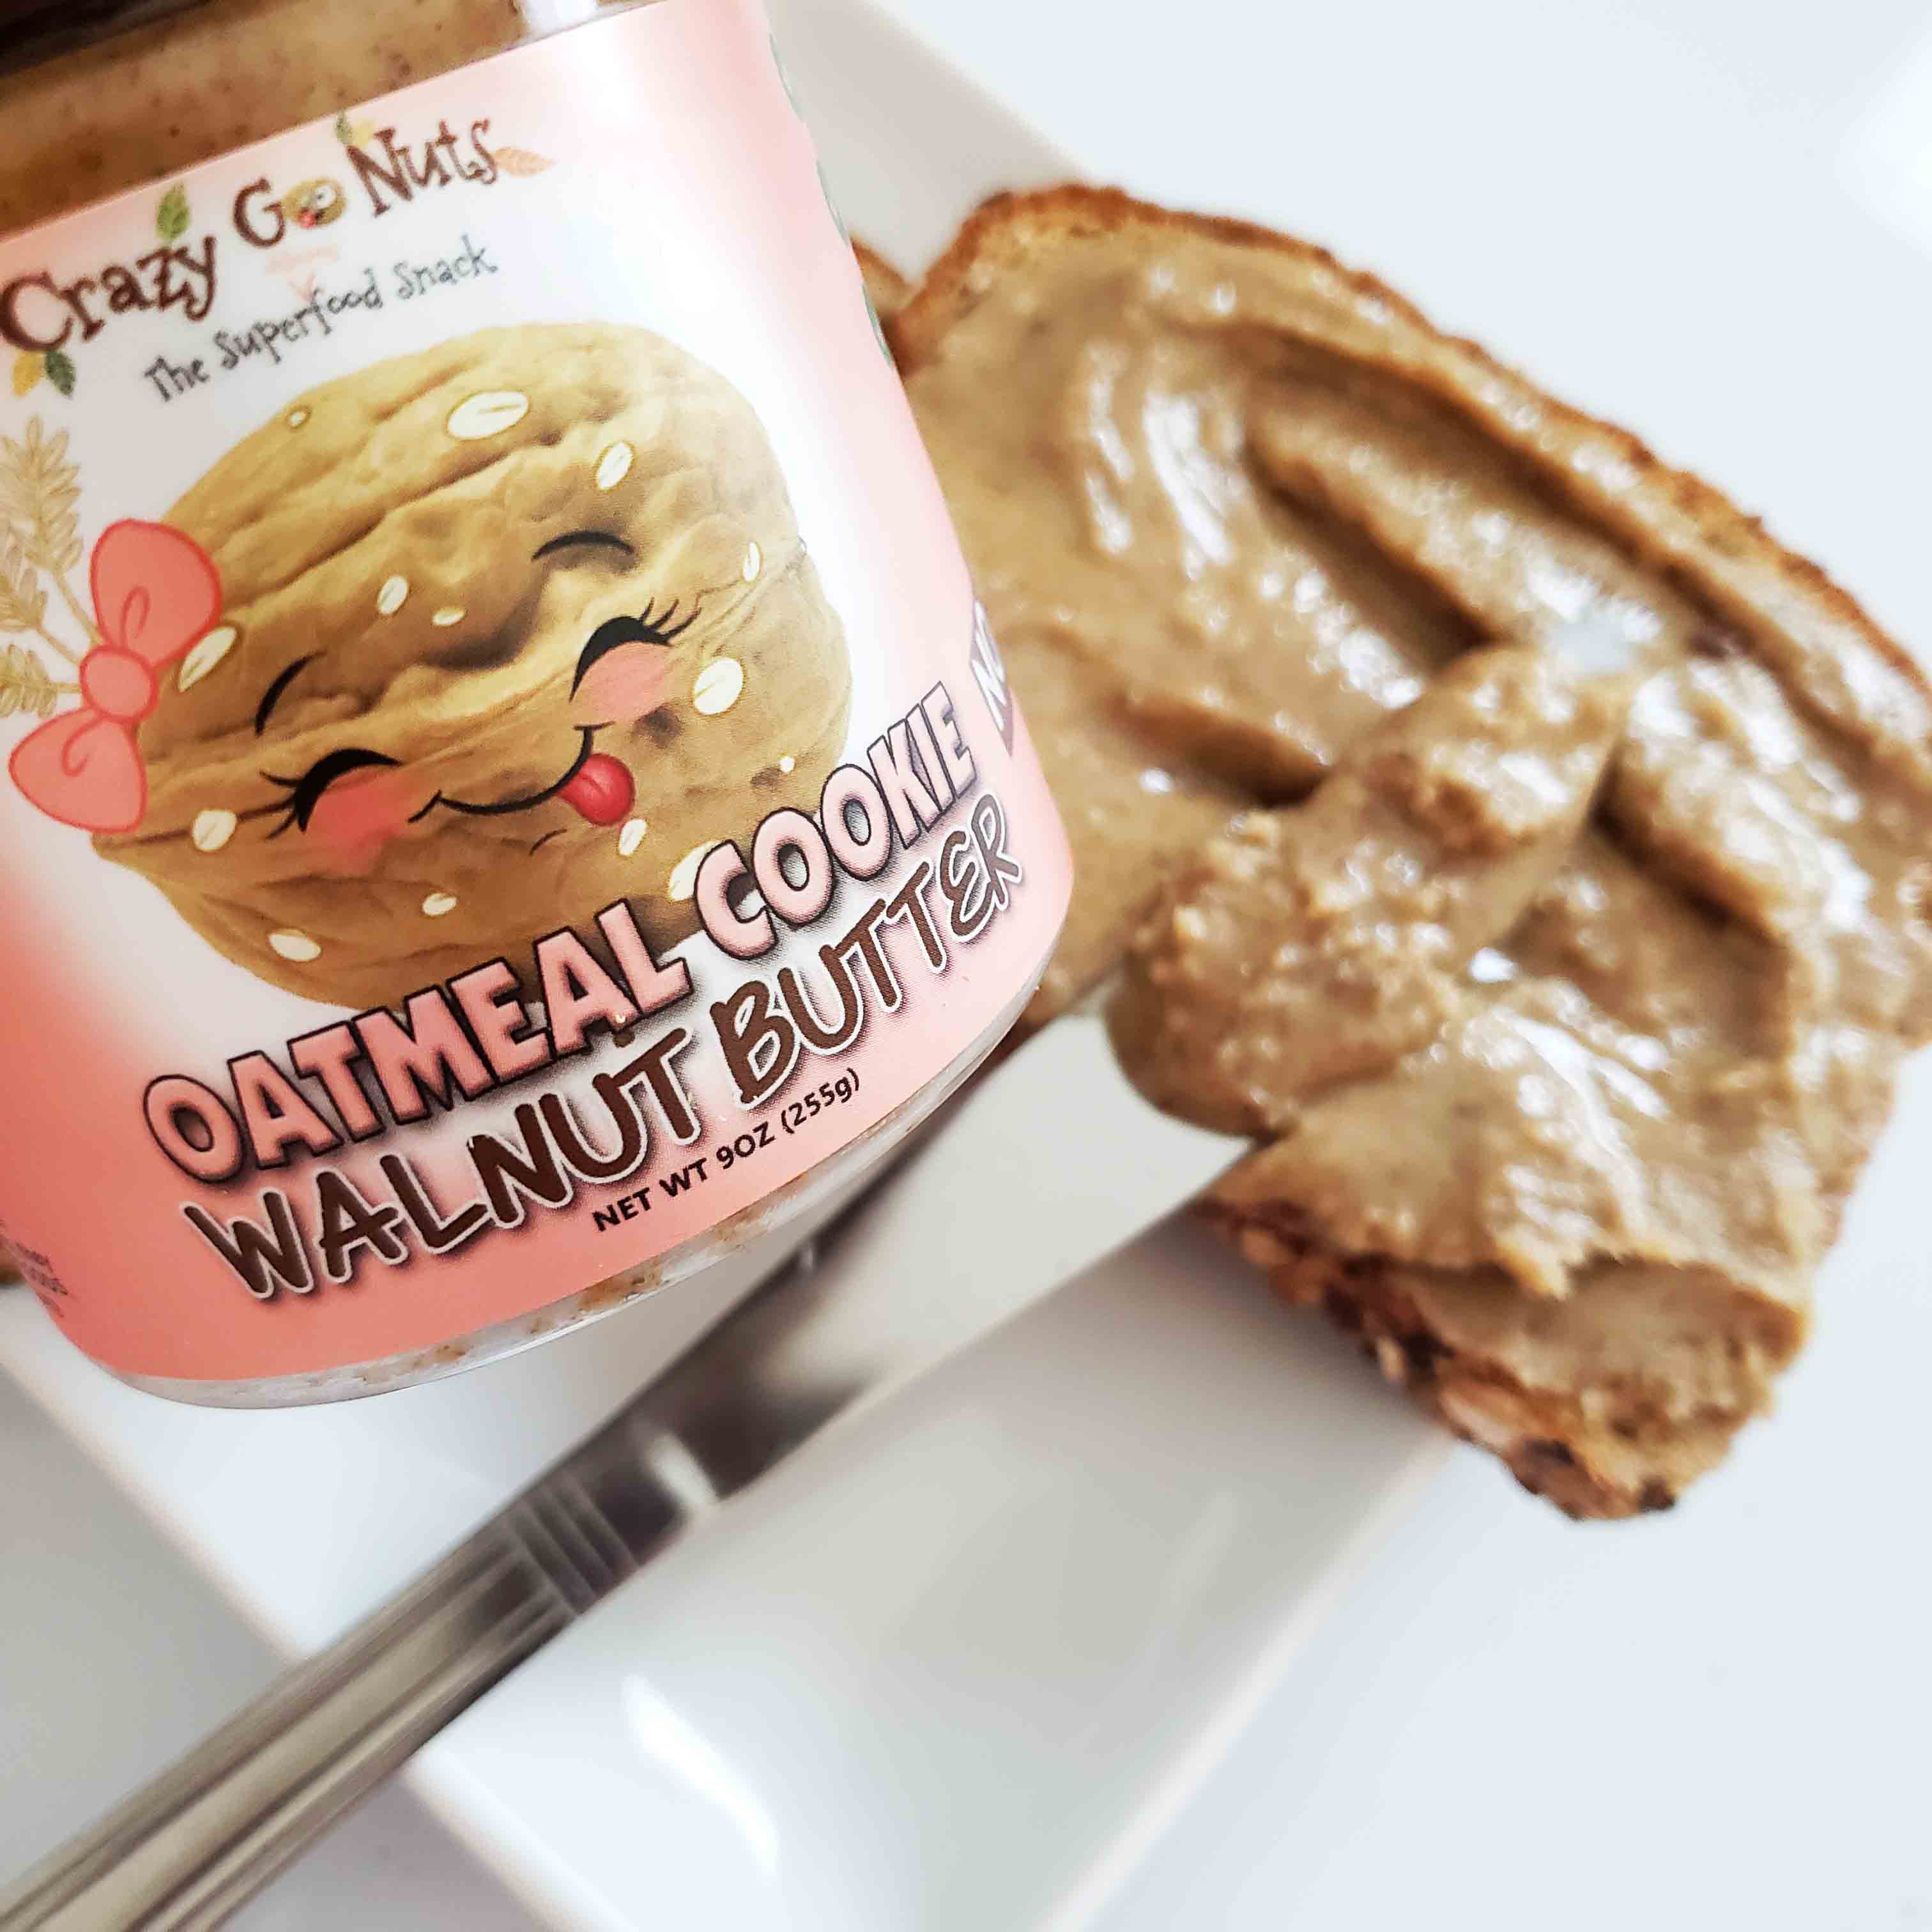 Oatmeal cookie walnut butter spread on toast